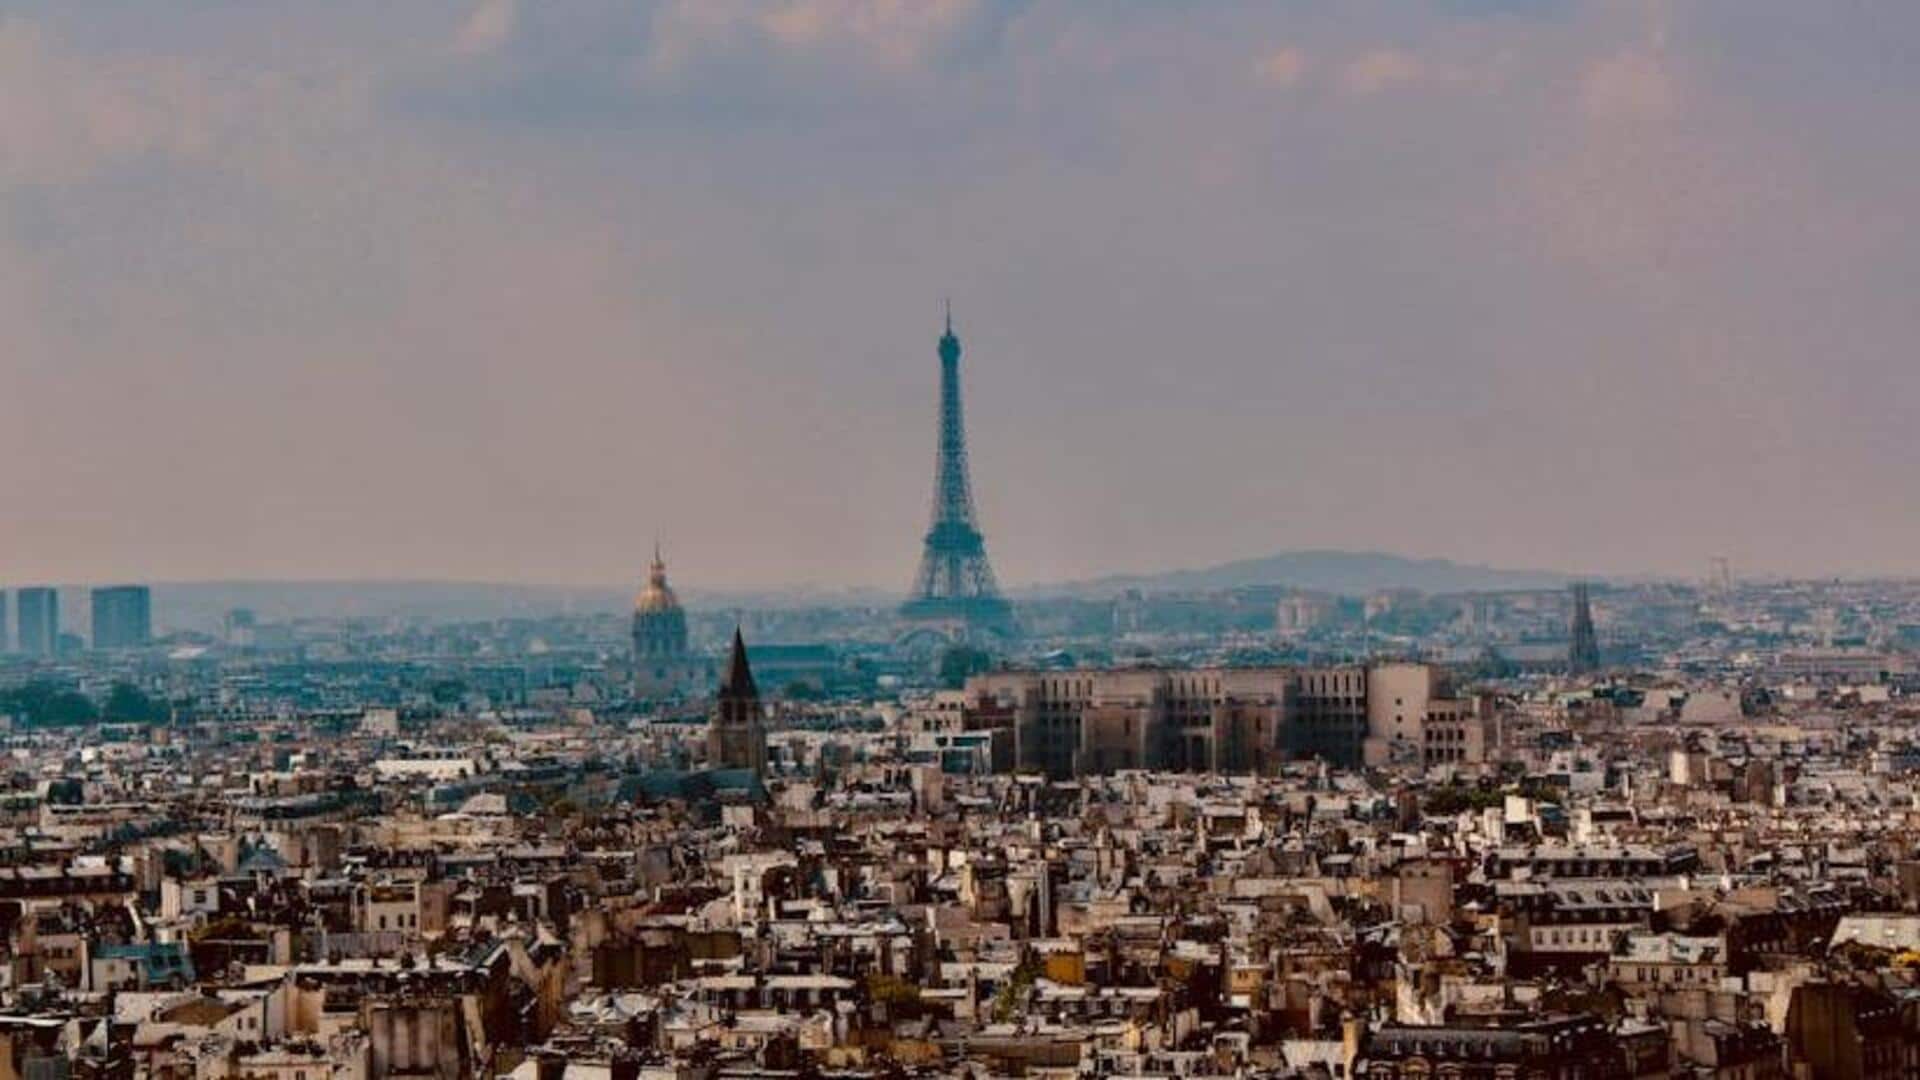 Have you been to these hidden neighborhood gems in Paris